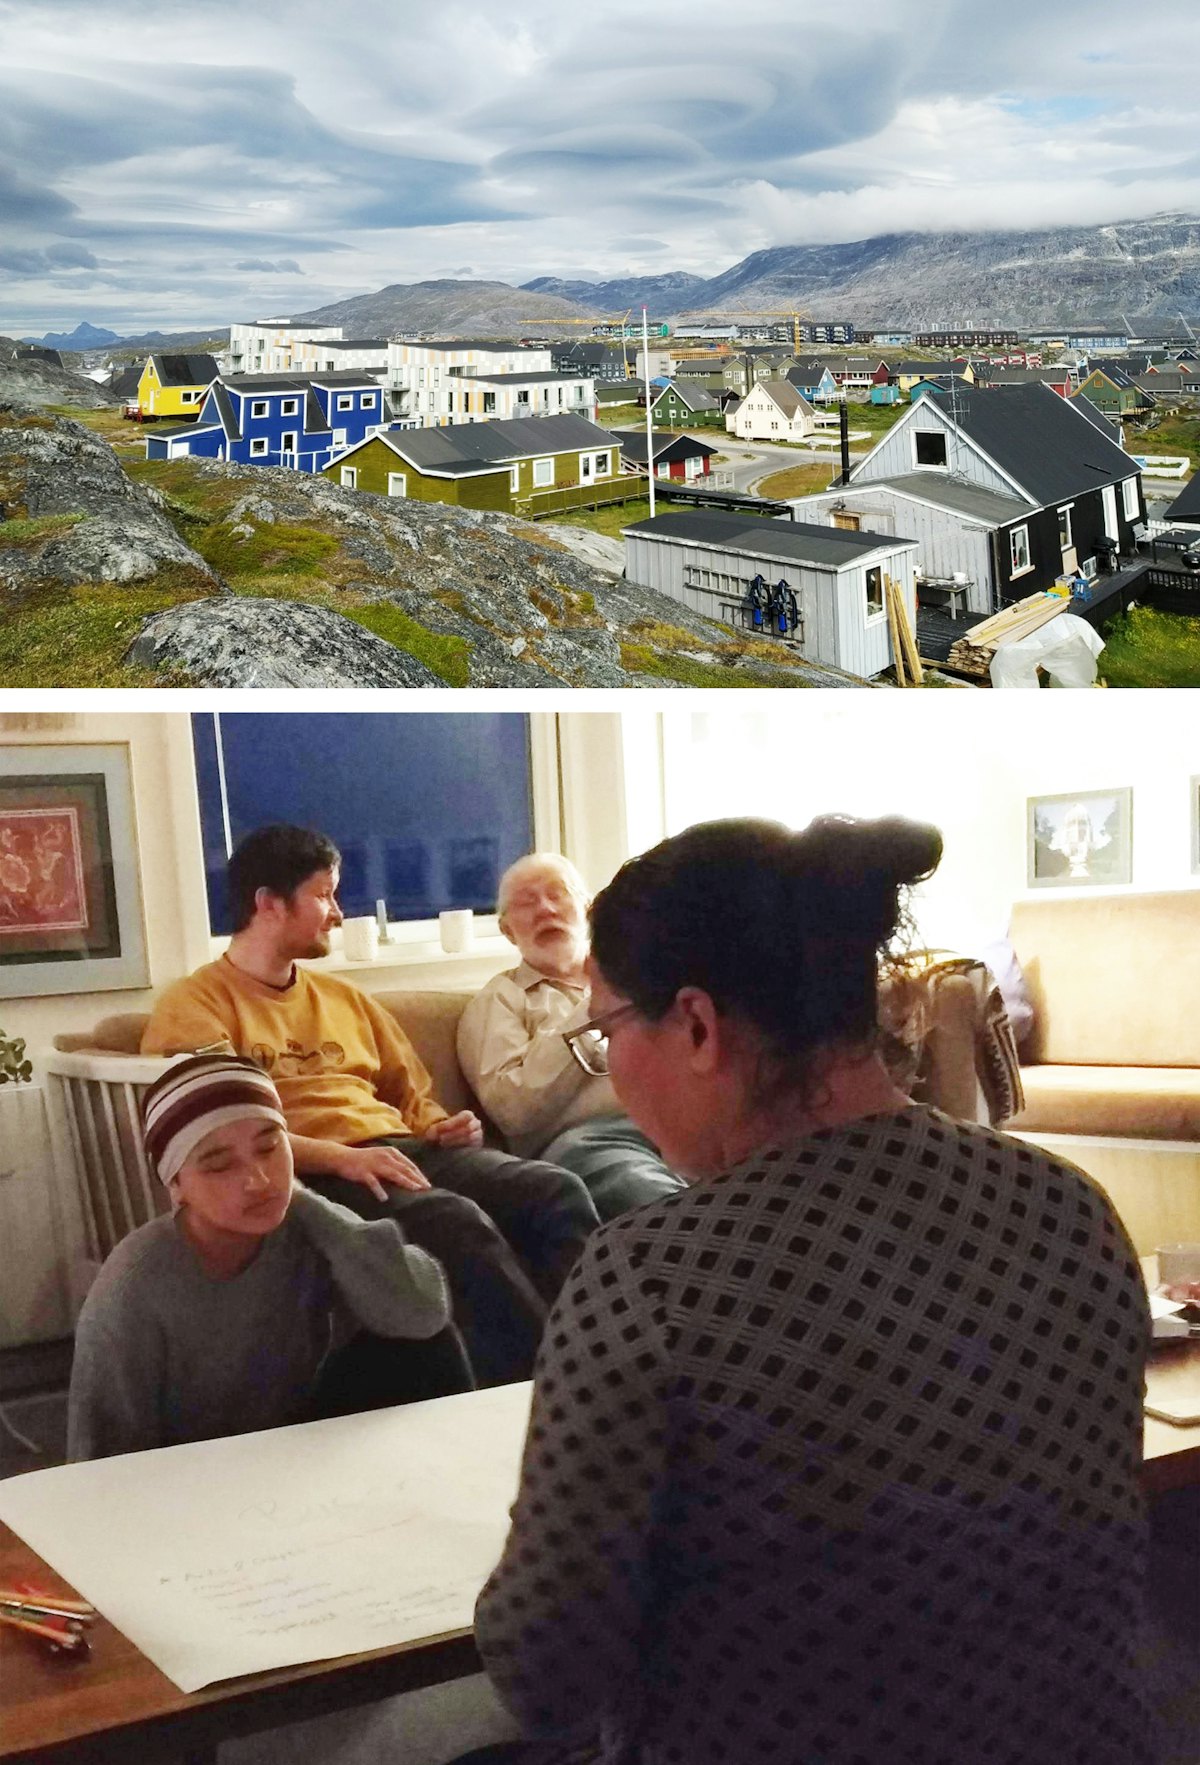 La communauté de Nuuk, au Groenland, s’est également préparée pour le prochain bicentenaire. Lors d’une récente réunion, les participants ont recherché des idées sur la manière de commémorer le bicentenaire du Báb. « L’atmosphère spirituelle était si merveilleuse », a déclaré un membre de la communauté.